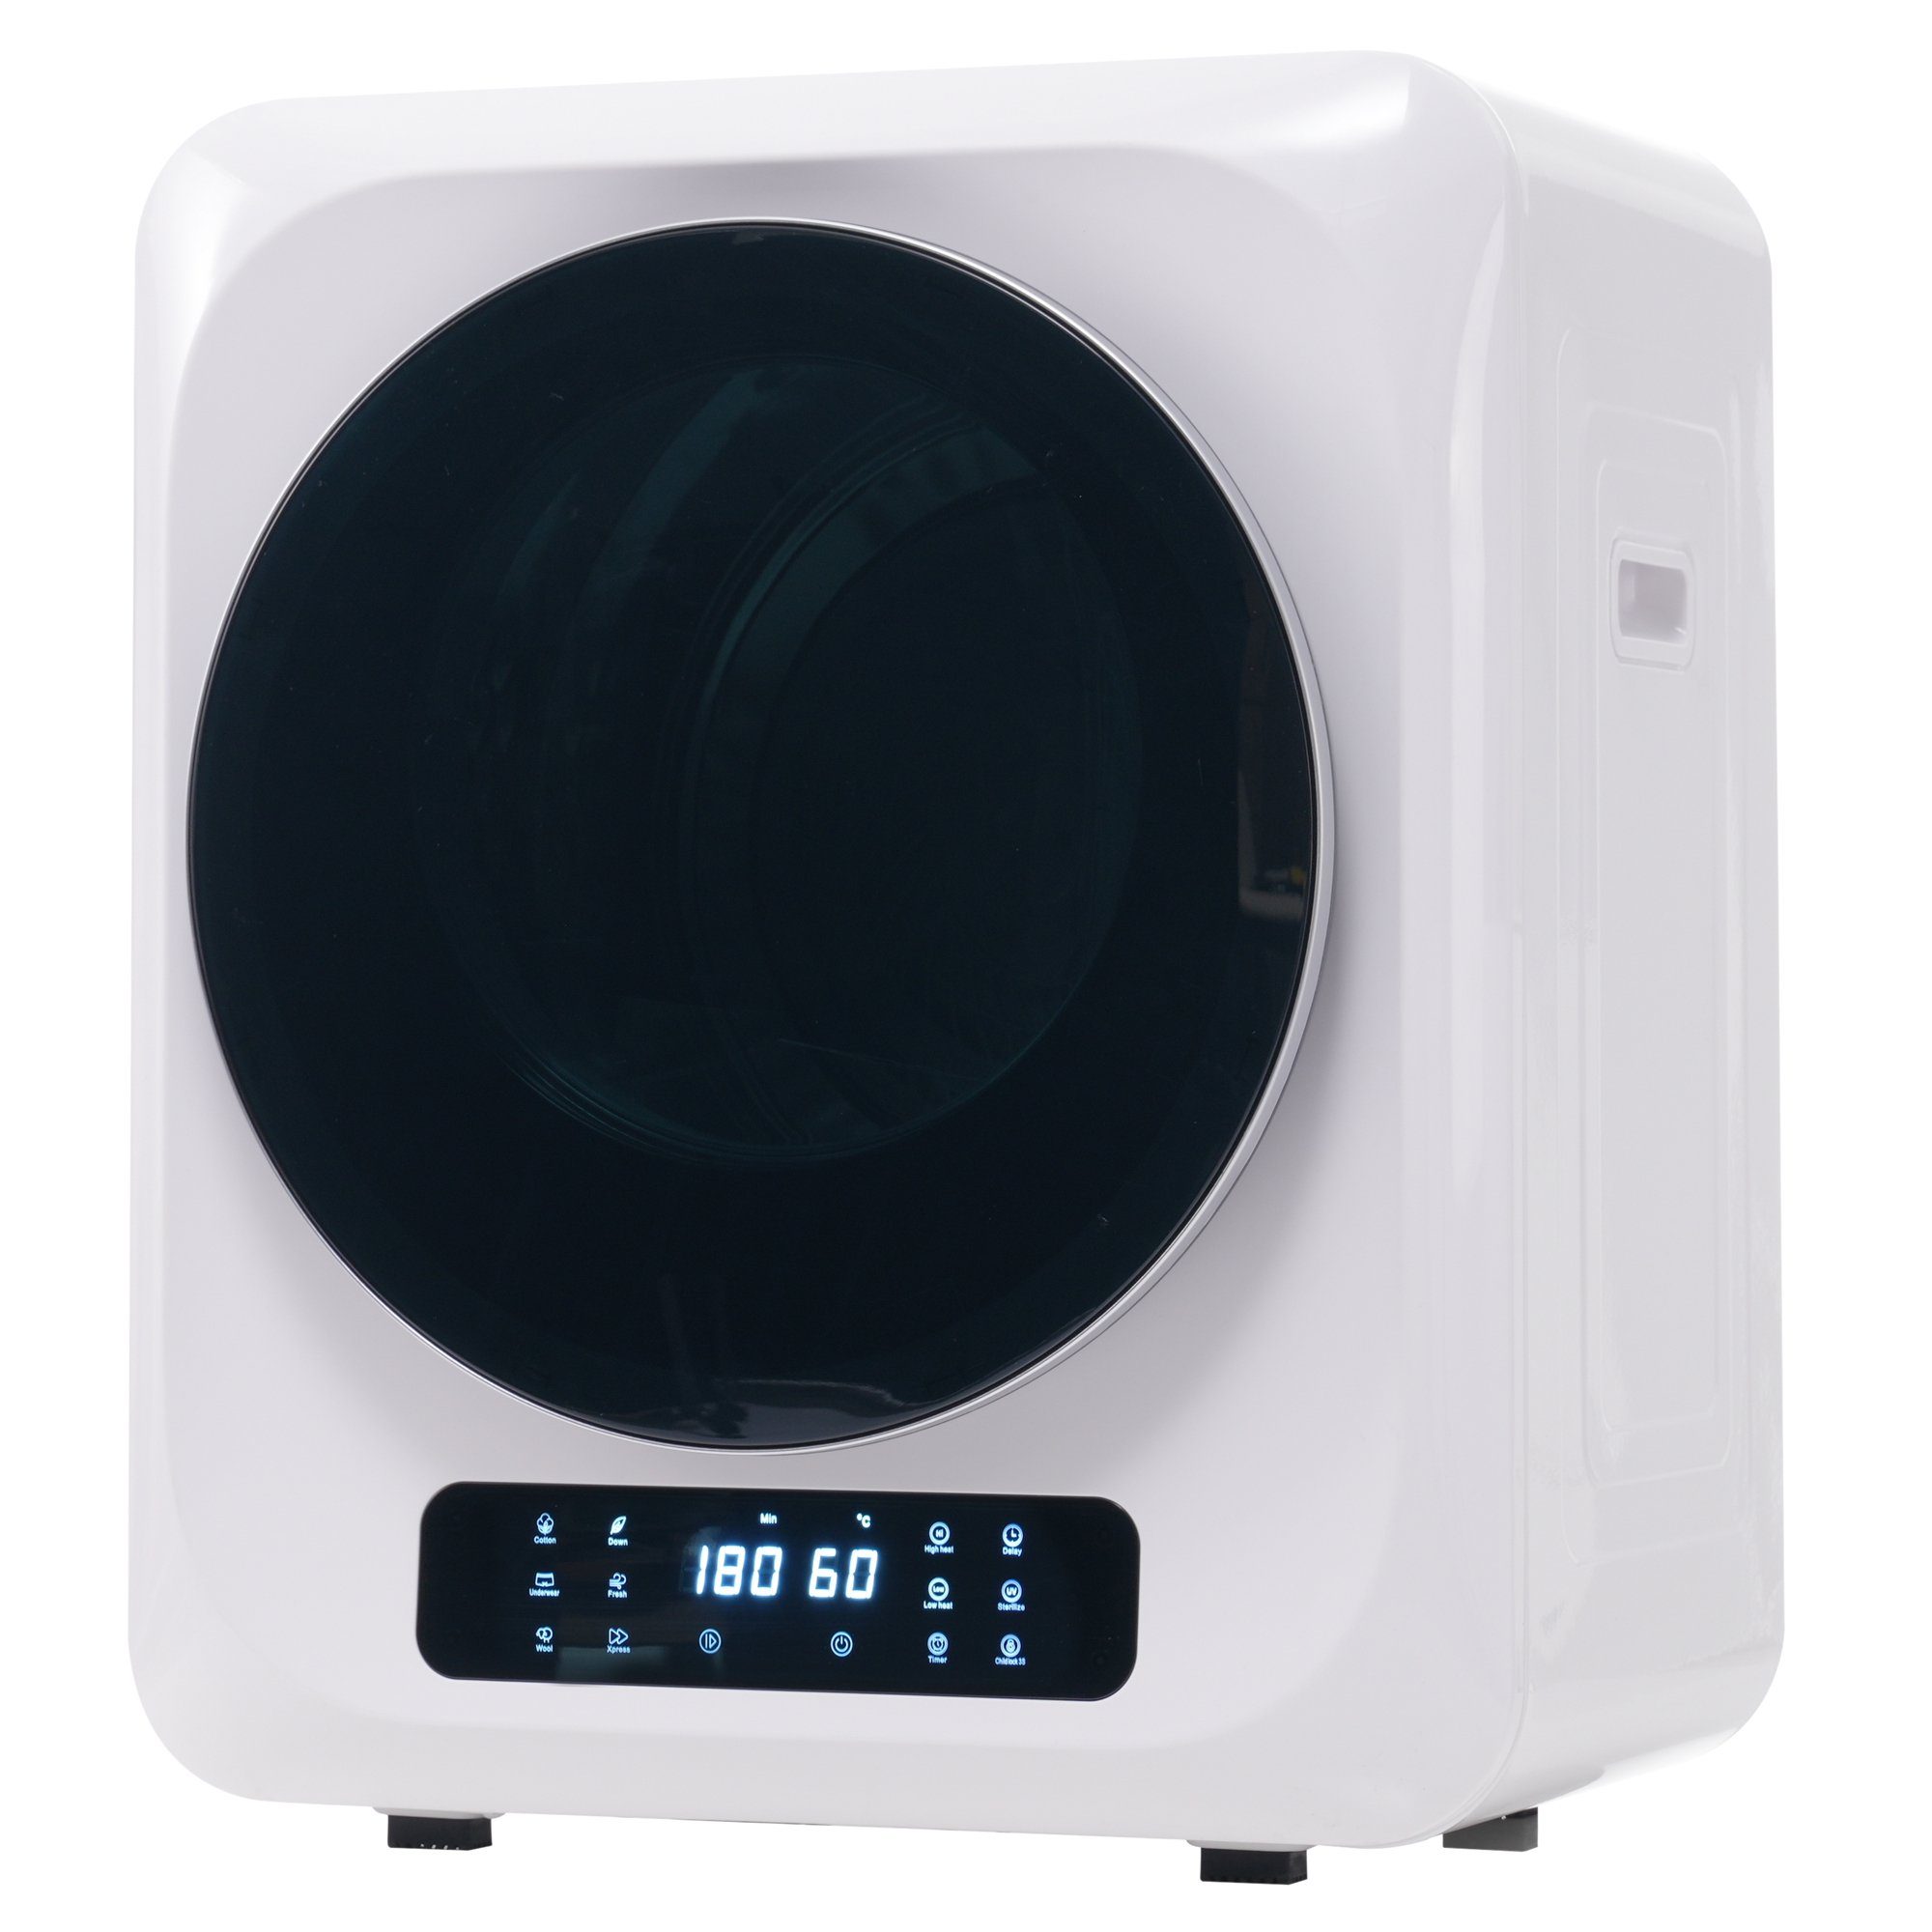 REDOM Ablufttrockner Mini-Wäschetrockner freistehend/hängend Mit UV-Sterilisation und LED-Display, 2.5 kg, Belüfteter Wäschetrockner mit Timer und 6 Programme Weiß